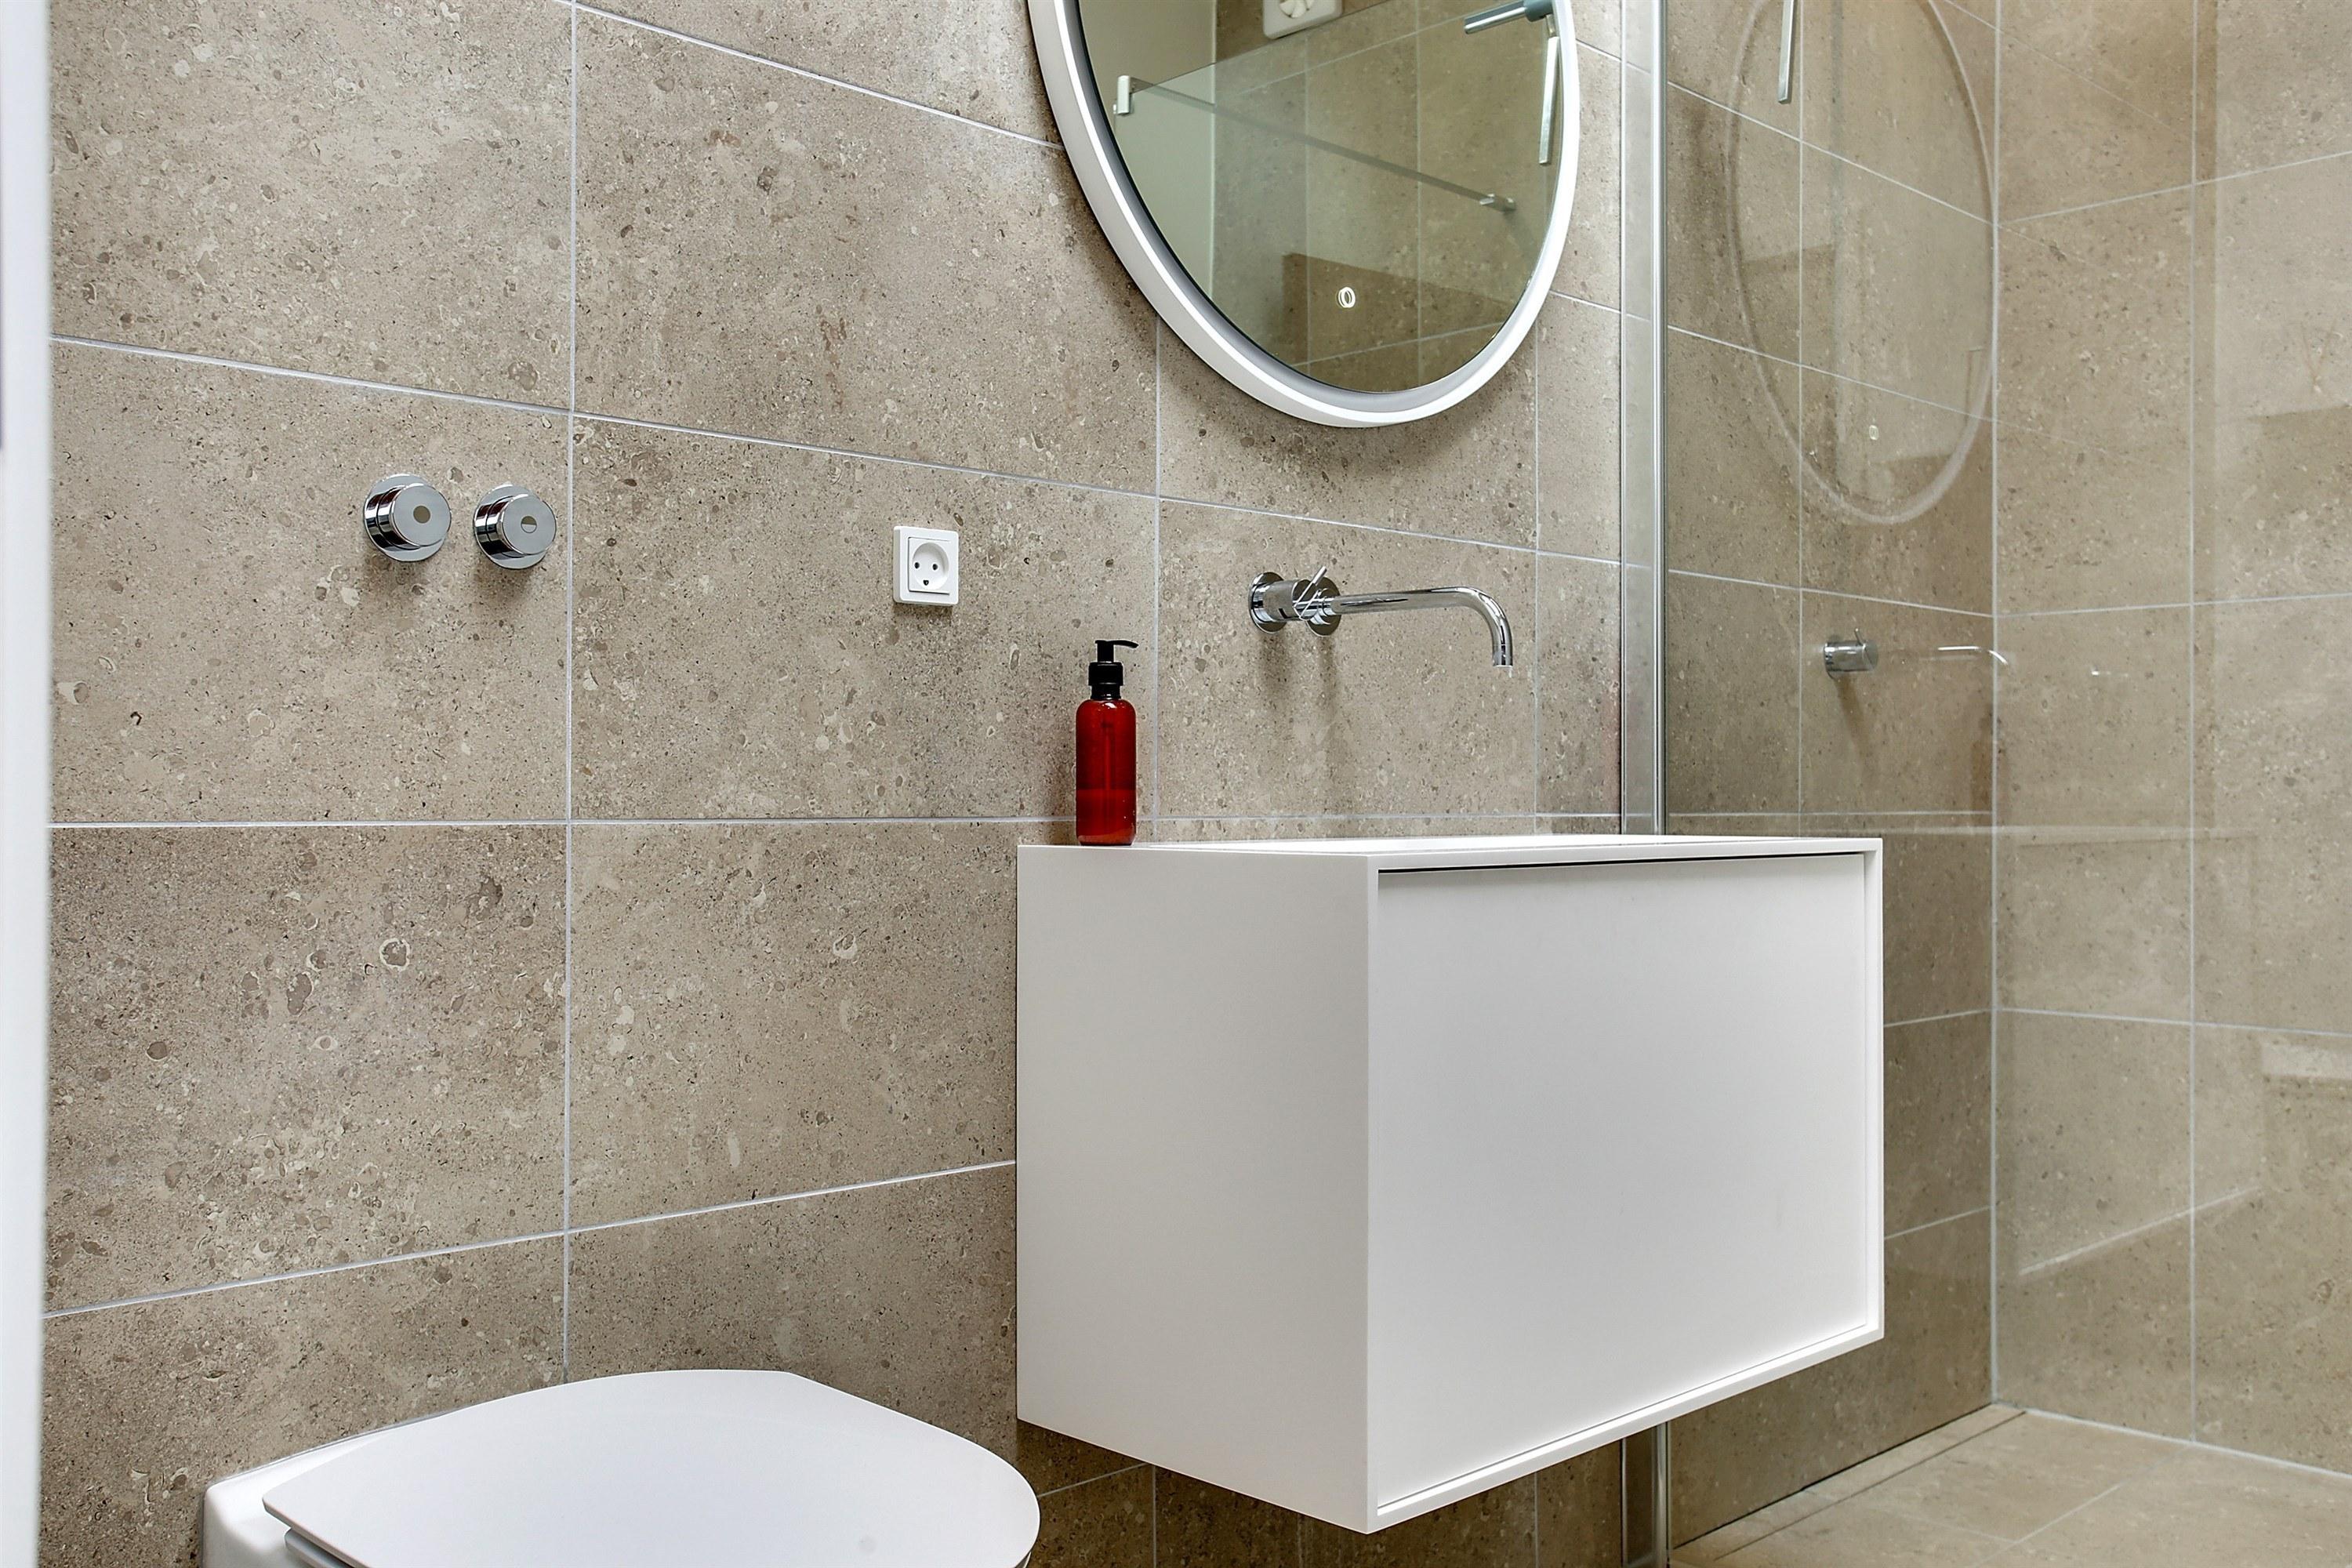 Valg af fliser eller klinker til dit badeværelse – Få mere at vide her